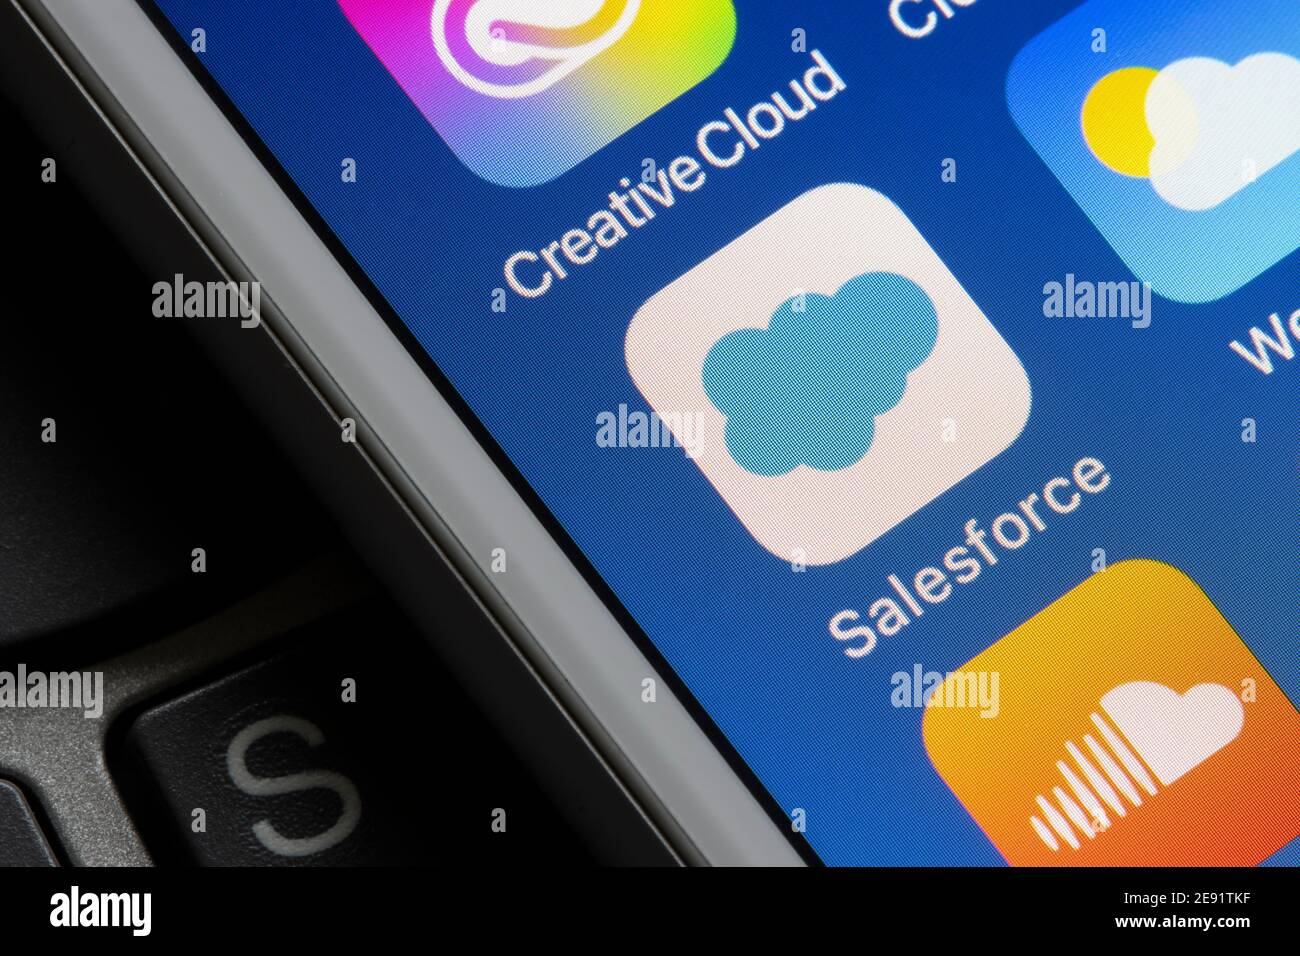 Das Salesforce App-Symbol ist auf einem iPhone am 30. Januar 2021 zu sehen. Salesforce.com, Inc. Ist ein amerikanisches Cloud-basiertes Softwareunternehmen. Stockfoto